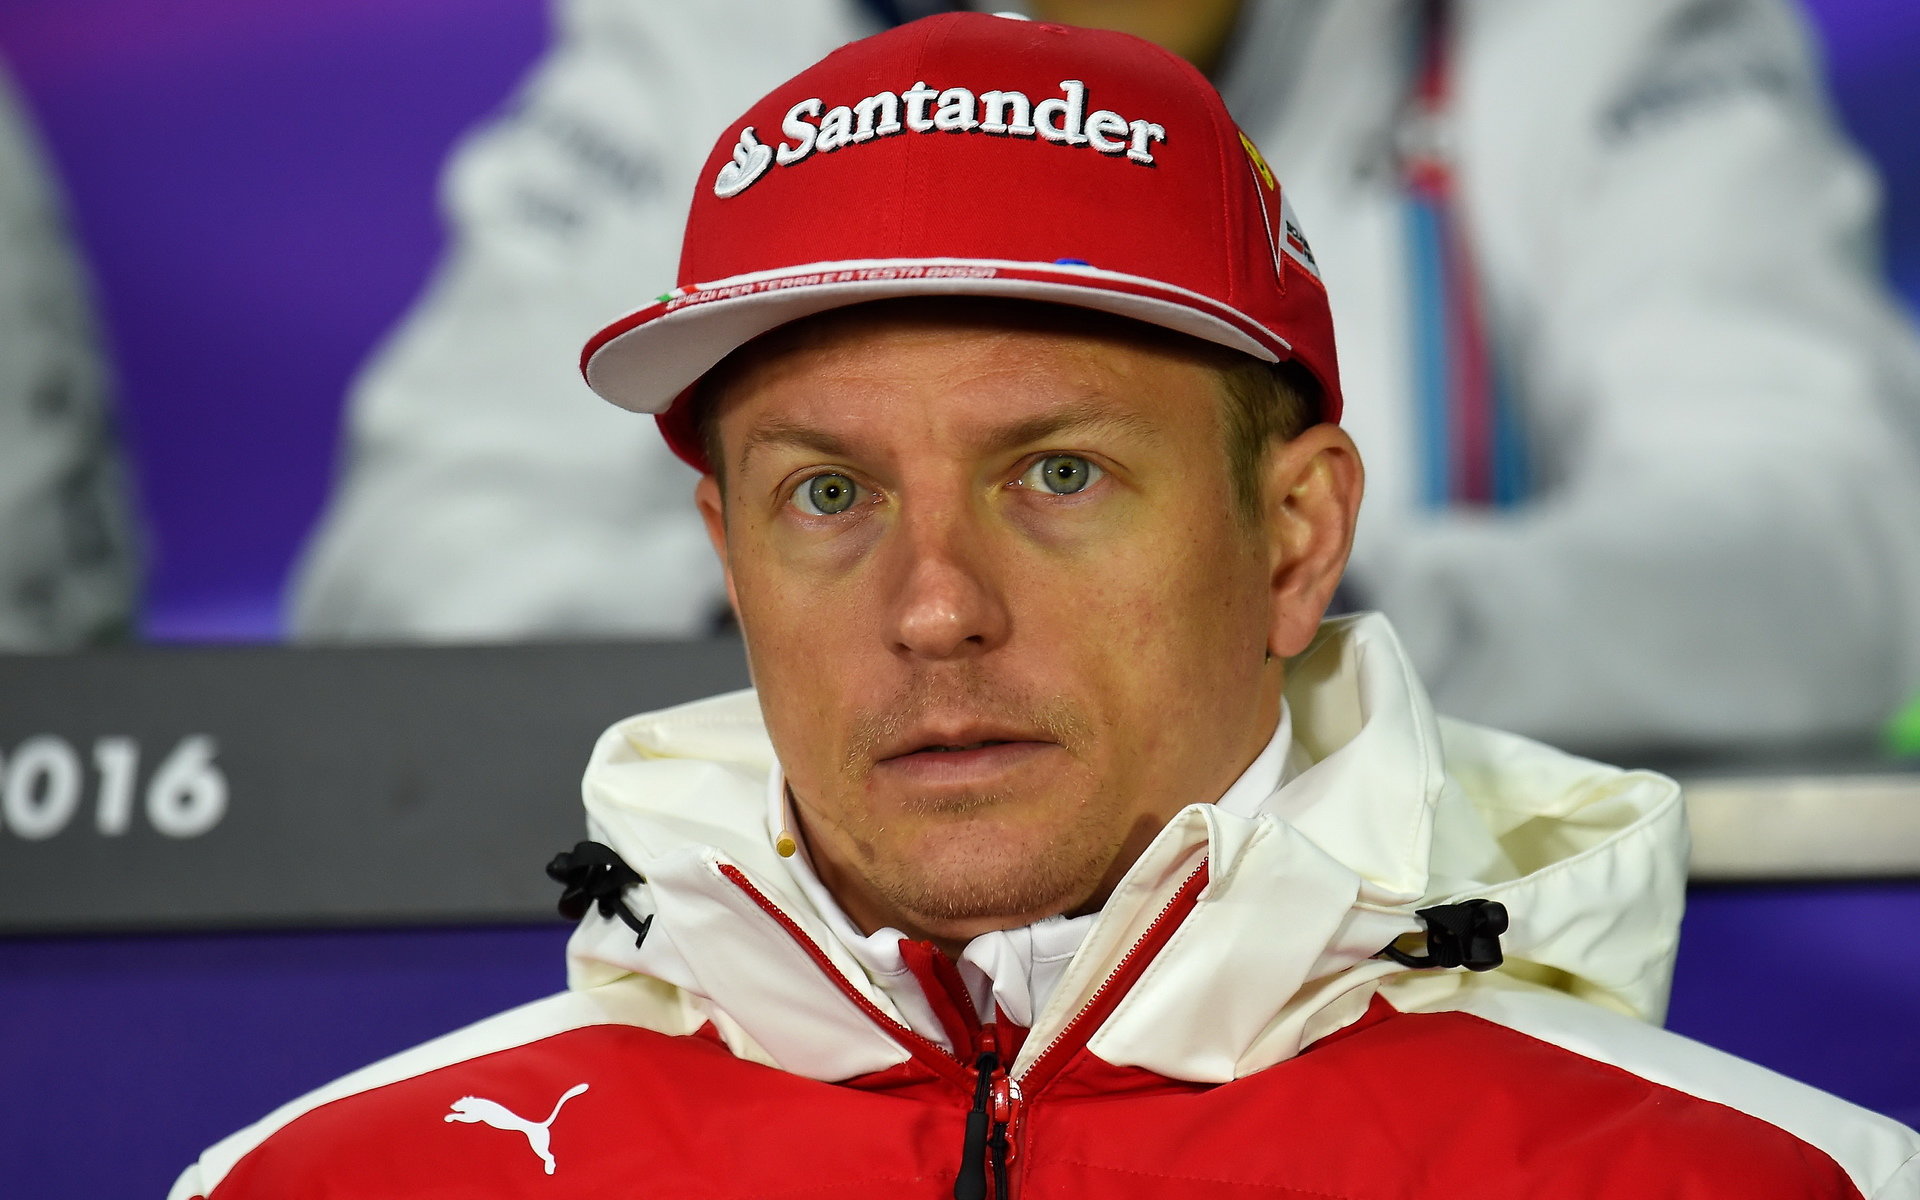 Kimi: Nemám pocit, že bych byl pro Ferrari jen "doplňkem"